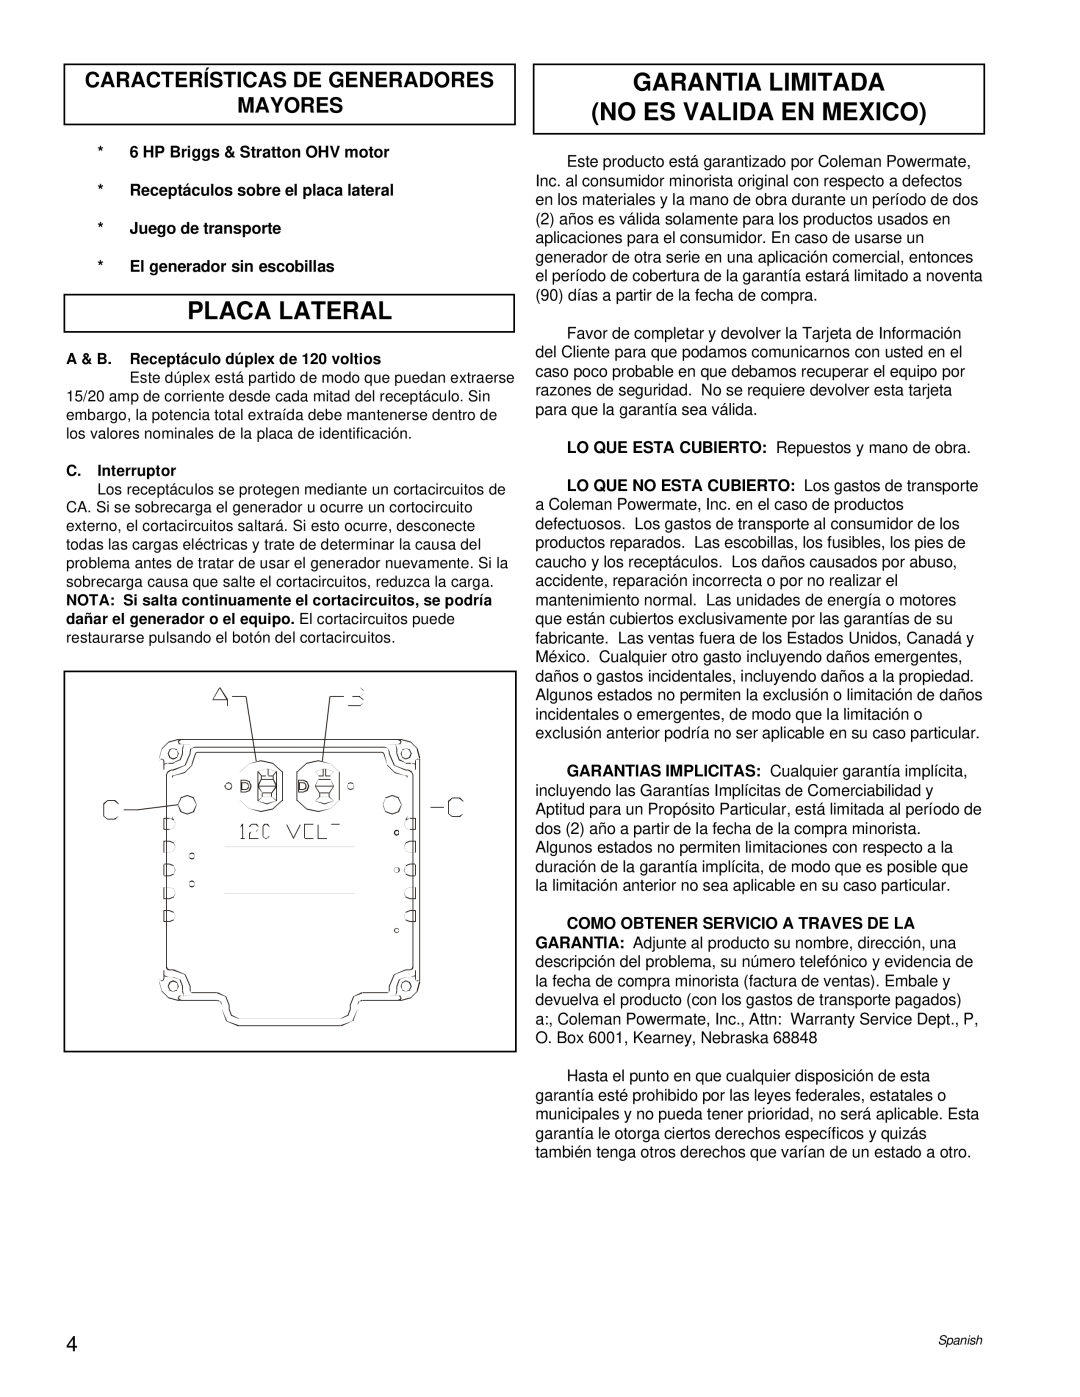 Powermate PM0543000.17 Placa Lateral, Garantia Limitada No Es Valida En Mexico, Características De Generadores Mayores 